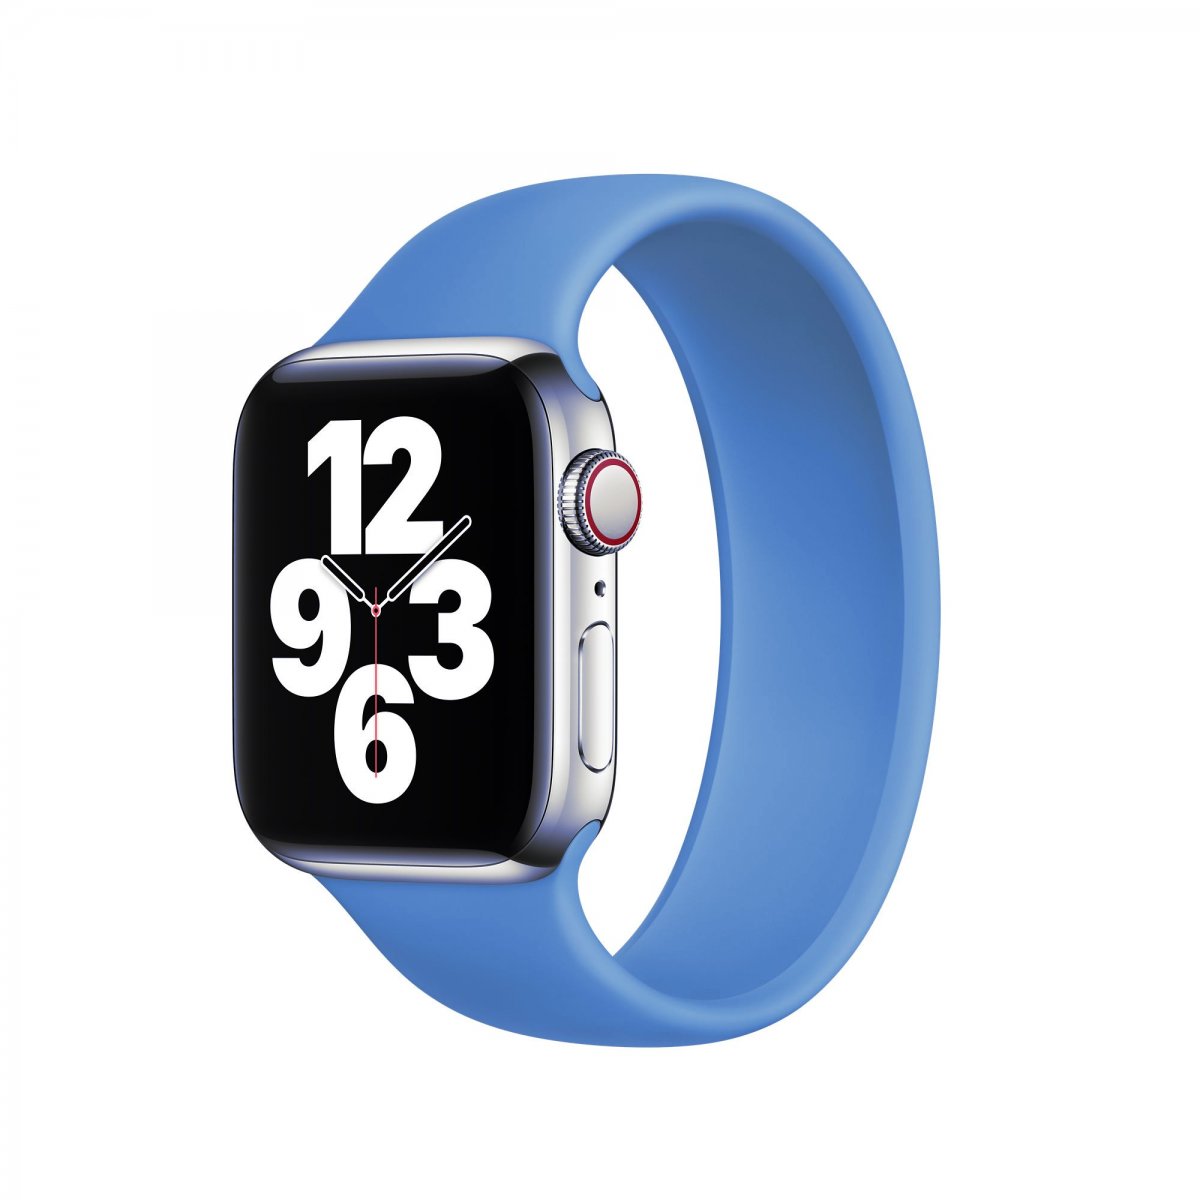 Řemínek iMore Solo Loop Apple Watch Series 1/2/3 38mm - Modrá (S)